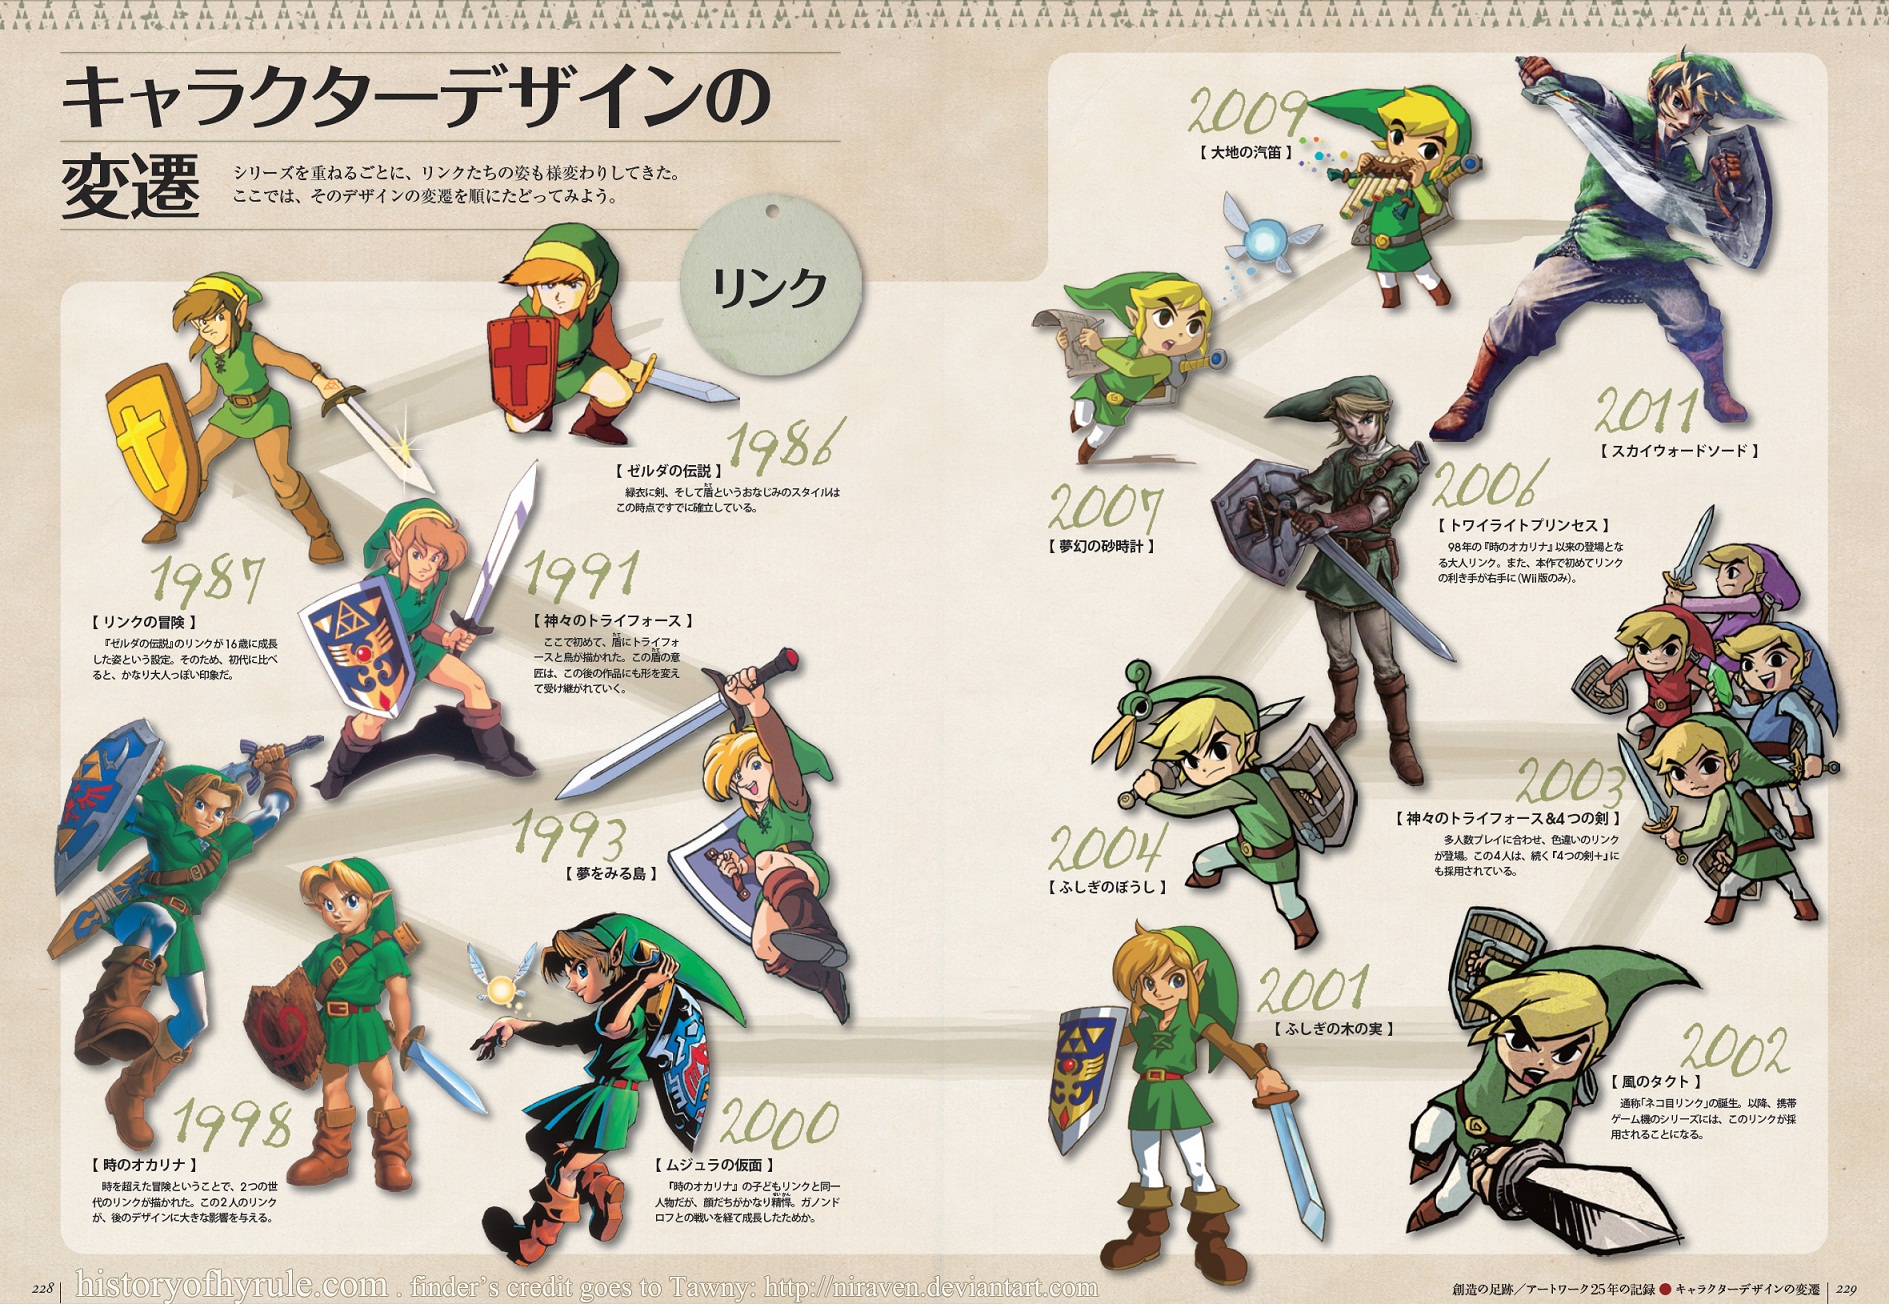 Comment Link et Zelda ont change en 25 ans